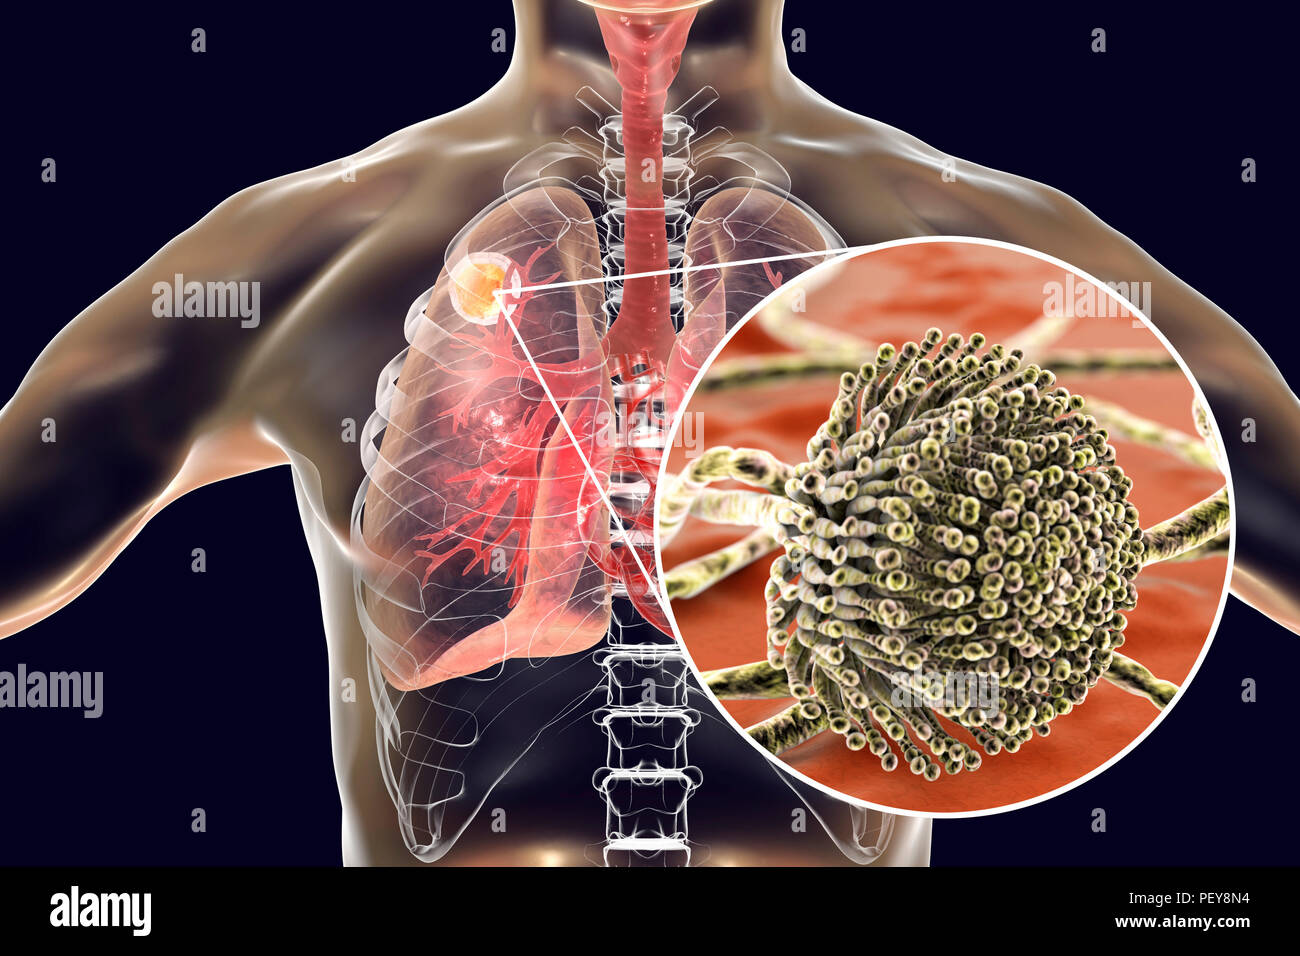 Aspergilloma der Lunge und eine Nahaufnahme von Aspergillus Pilze, computer Abbildung. Auch als myzetom oder Pilz ball bekannt, ist dies ein intrapulmonary Läsion durch Aspergillus Pilze bei immunsupprimierten Patienten hergestellt. Stockfoto